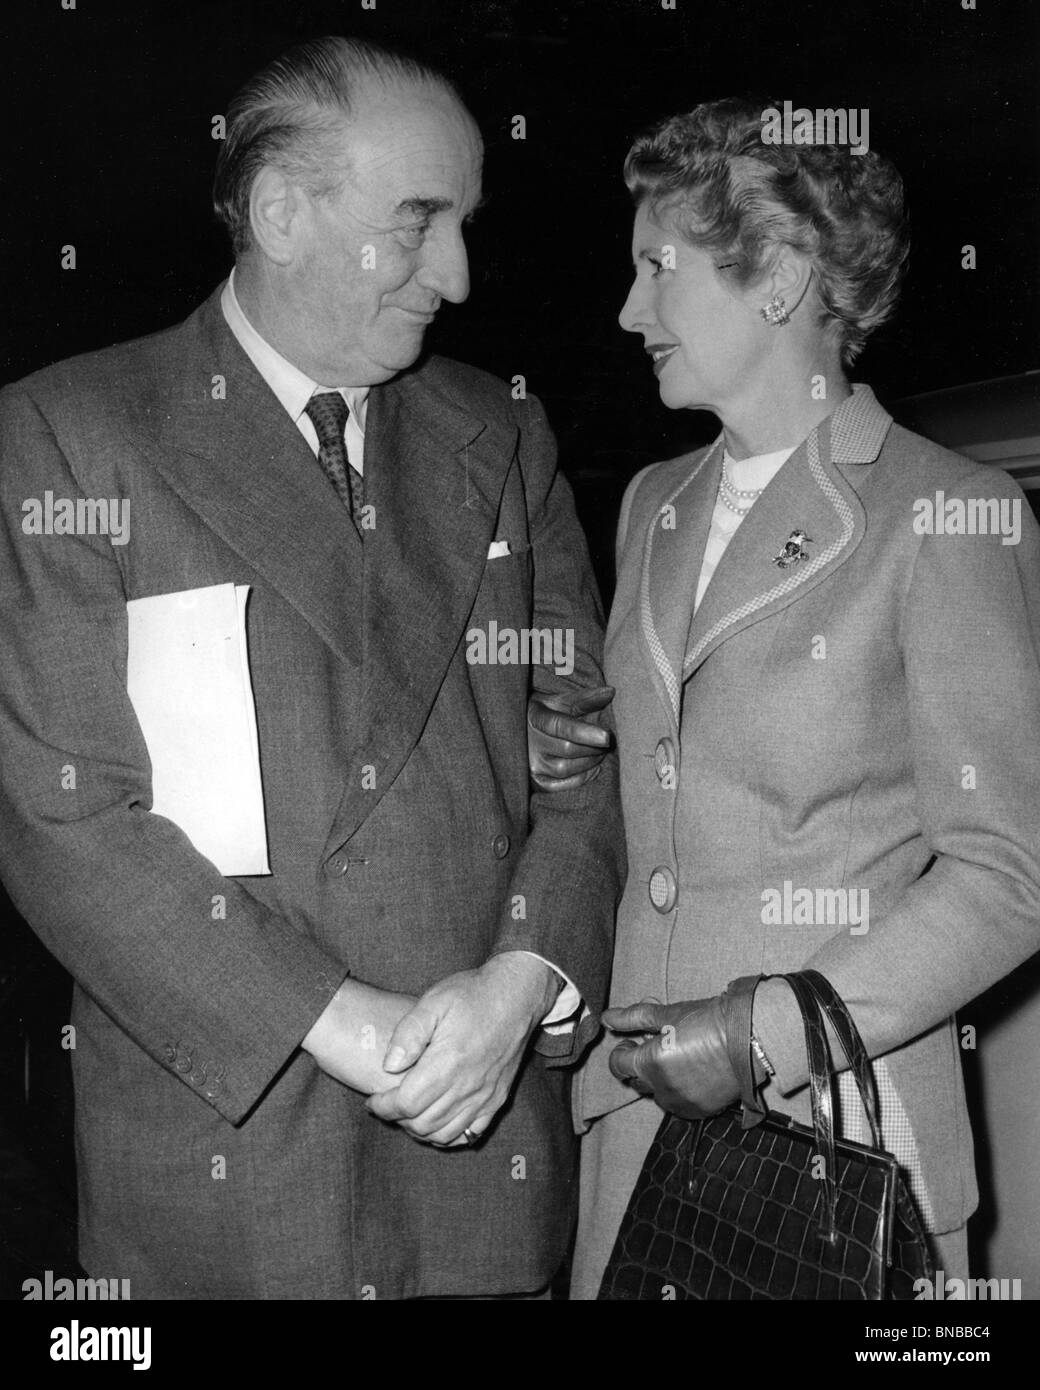 SIR BERNARD ET LADY NORAH DOCKER Anglais industriel et son épouse vers 1950 Banque D'Images